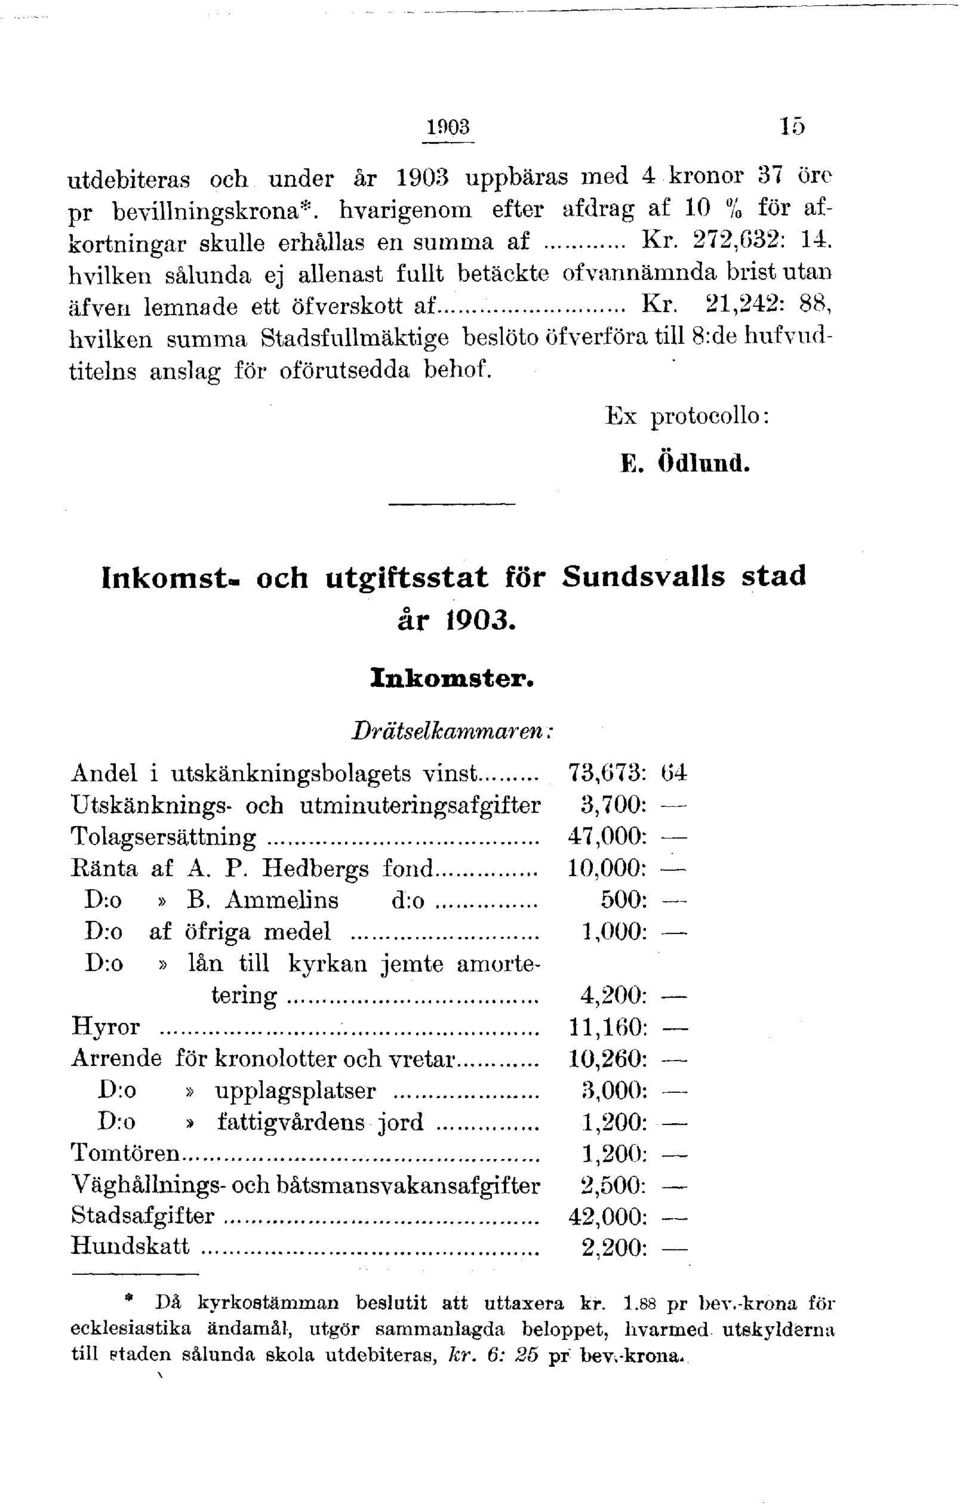 21,242: 88, hvilken summa Stadsfullmäktige beslöto öfverföra till 8:de hufvudtitelns anslag för oförutsedda behof. Ex protocollo: E. Ödlund. Inkomst- och utgiftsstat för Sundsvalls stad år 1903.